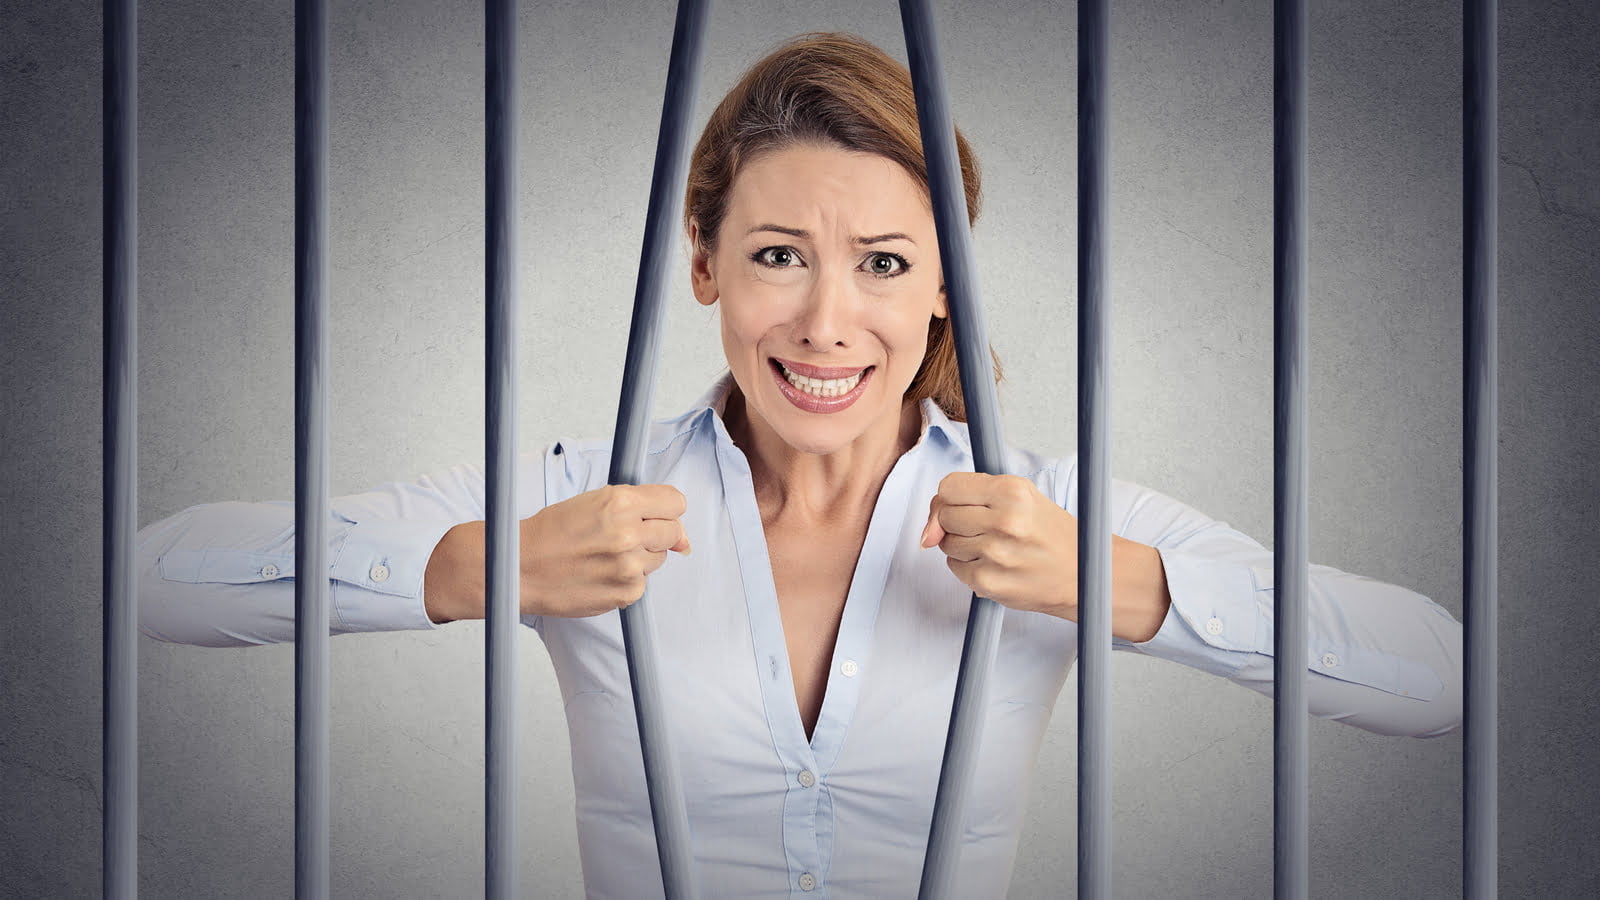 Woman stuck behind bars.